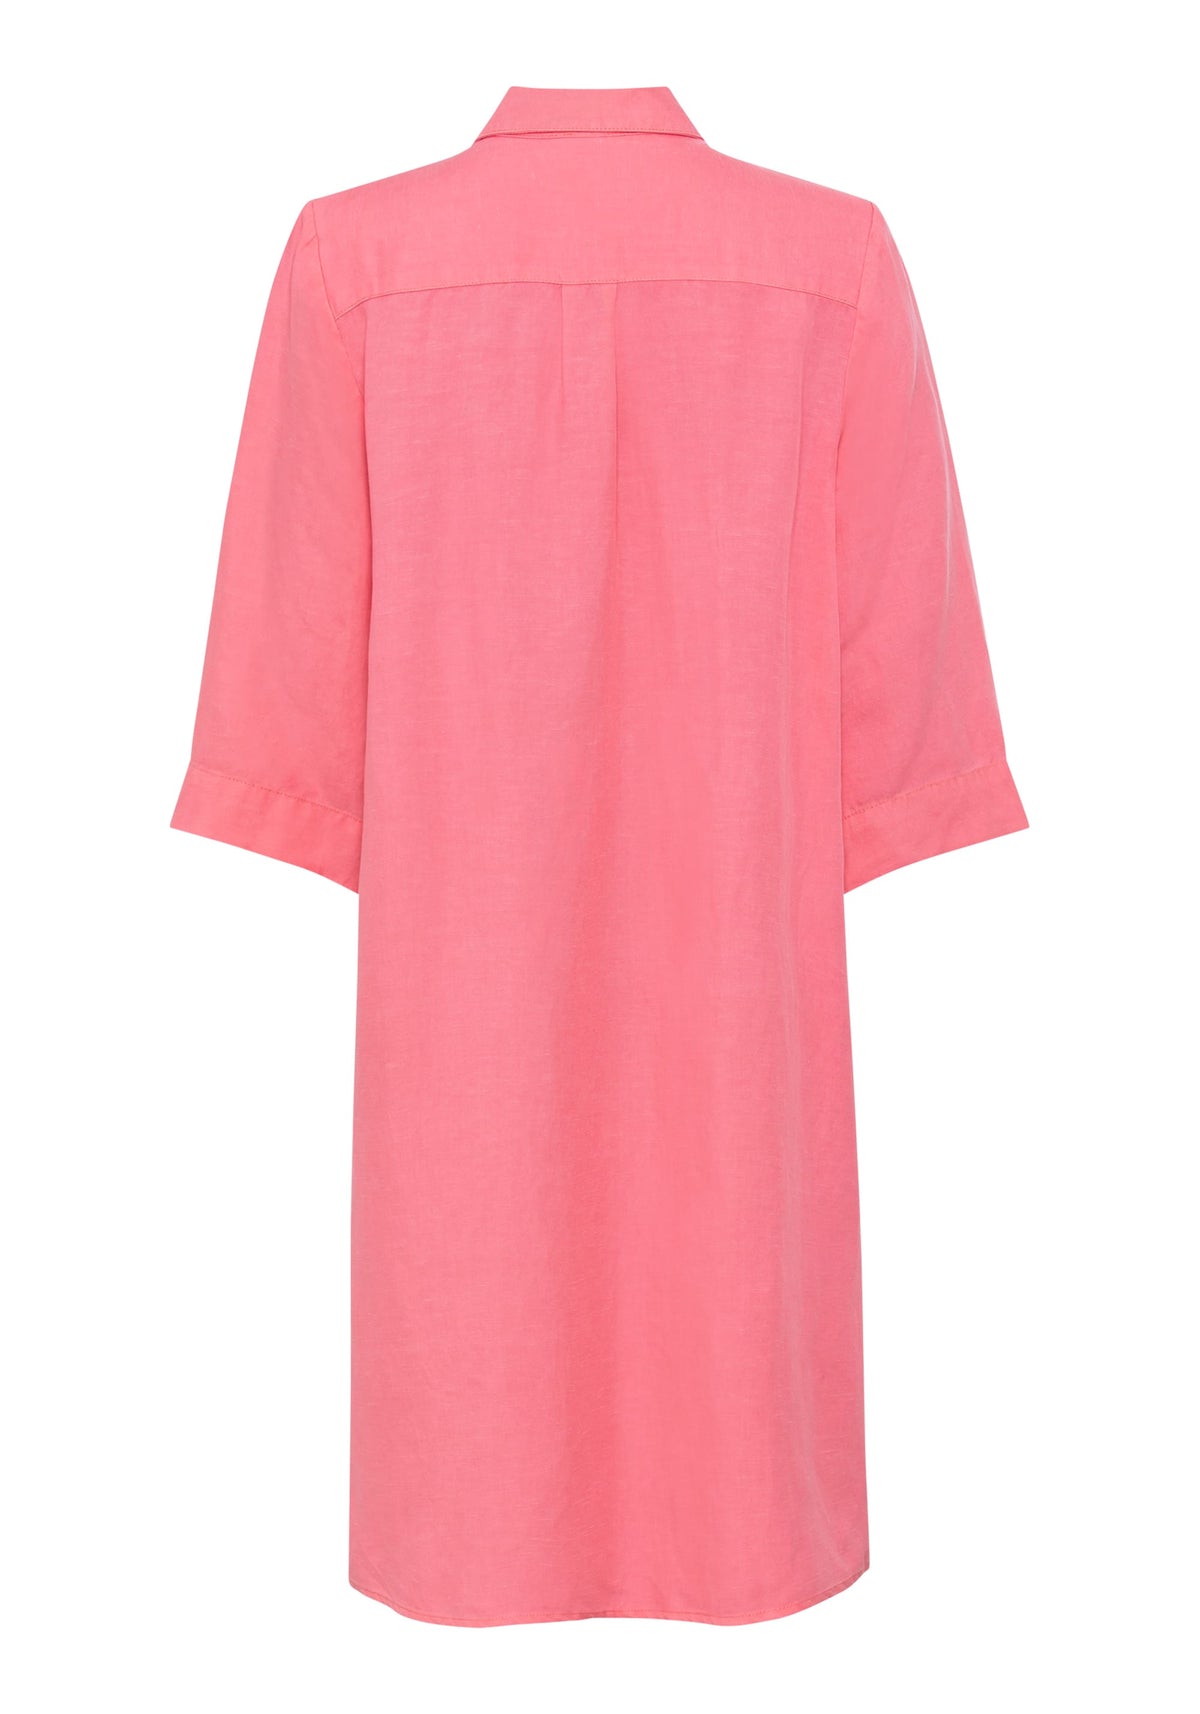 3/4 Sleeve Linen Blend Shirt Dress containing TENCEL™ Lyocell